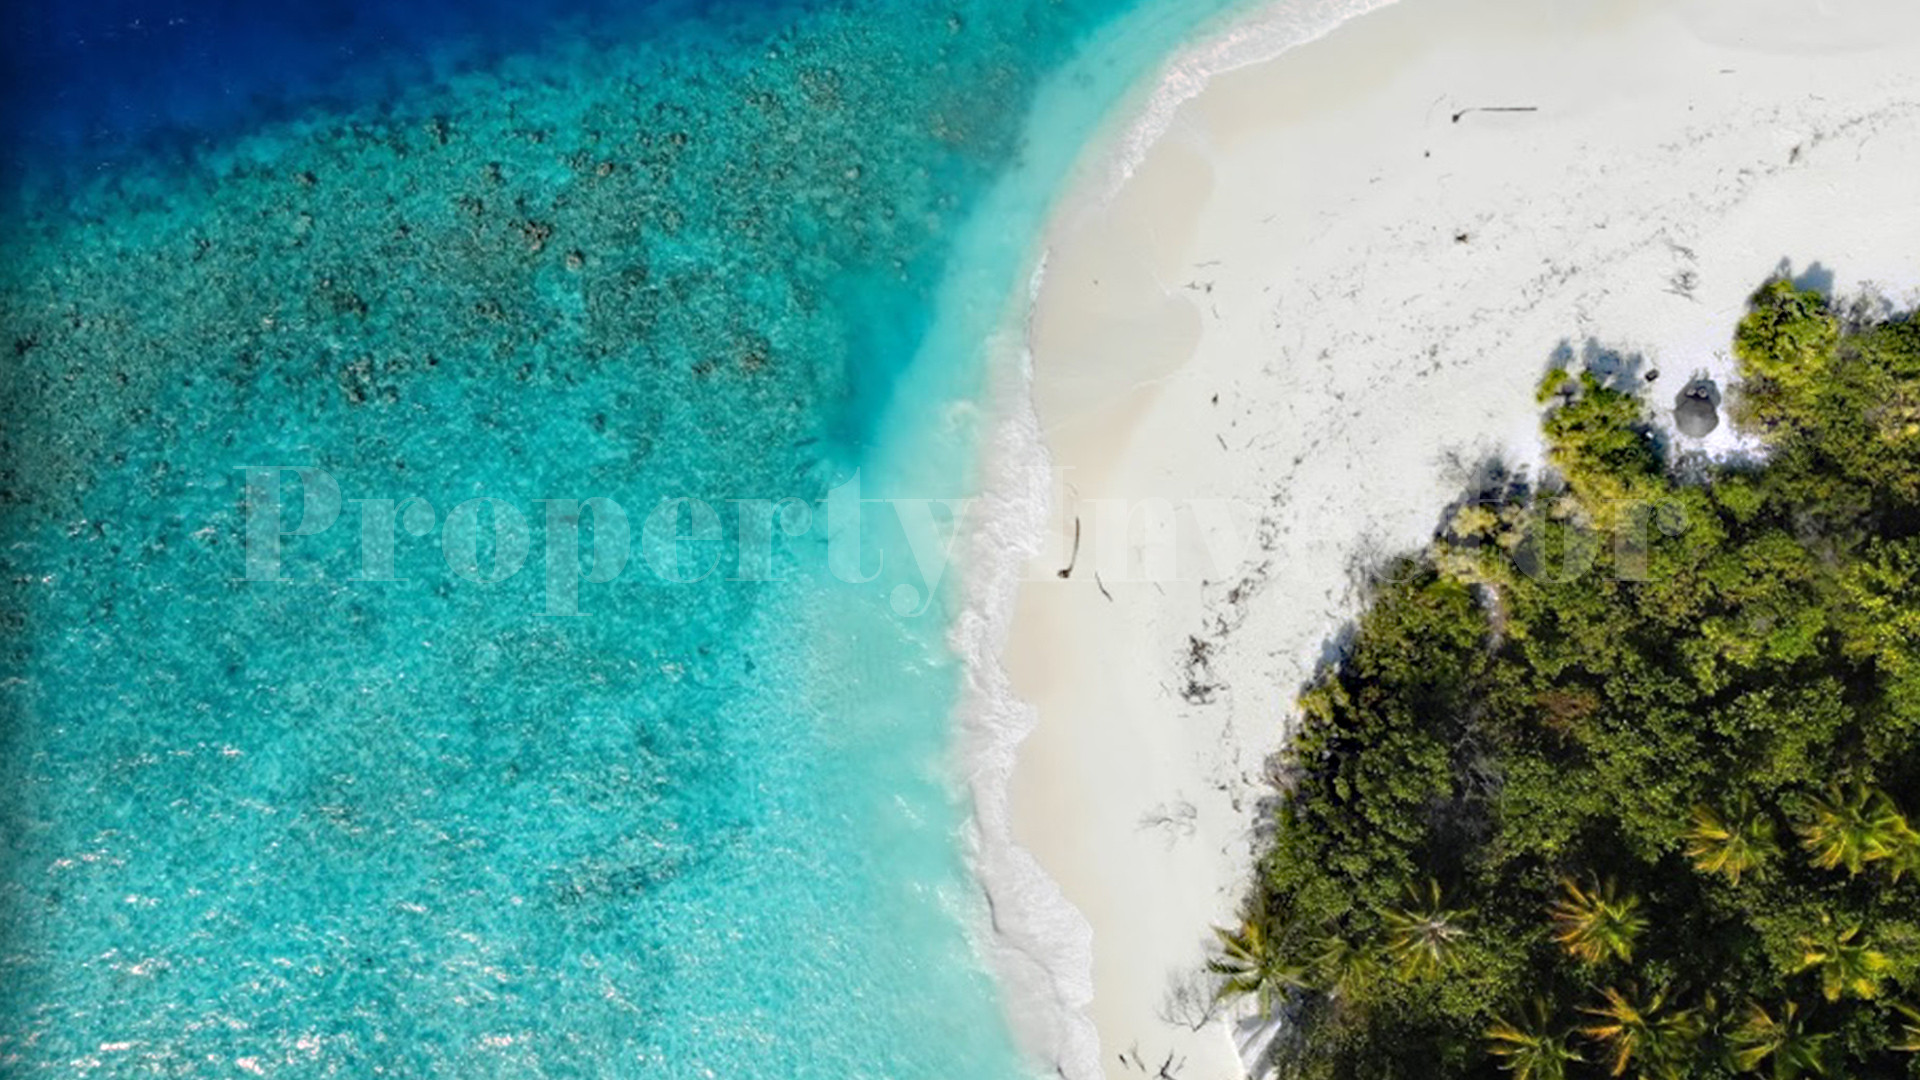 Нетронутый остров как с картинки 2,6 га  с утвержденным планом под коммерческое развитие на Мальдивах